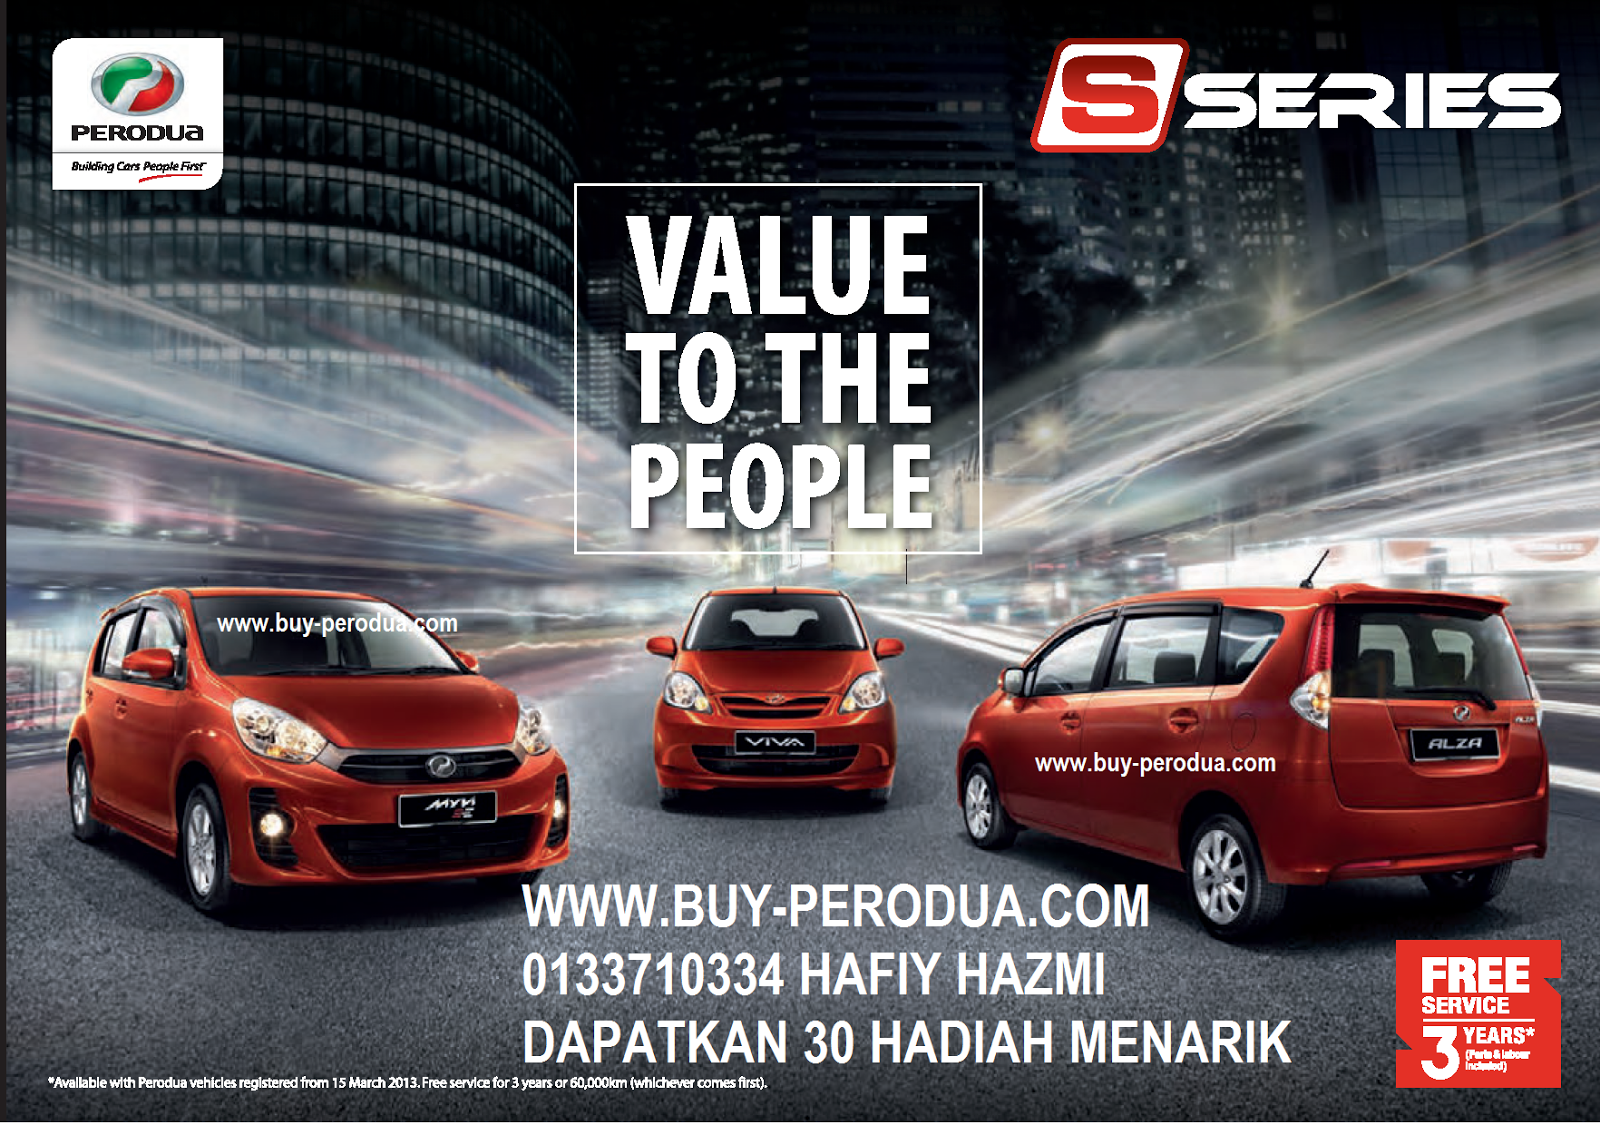 Promosi Perodua Baharu: THE NEW PERODUA MVYI 1.3 S SERIES